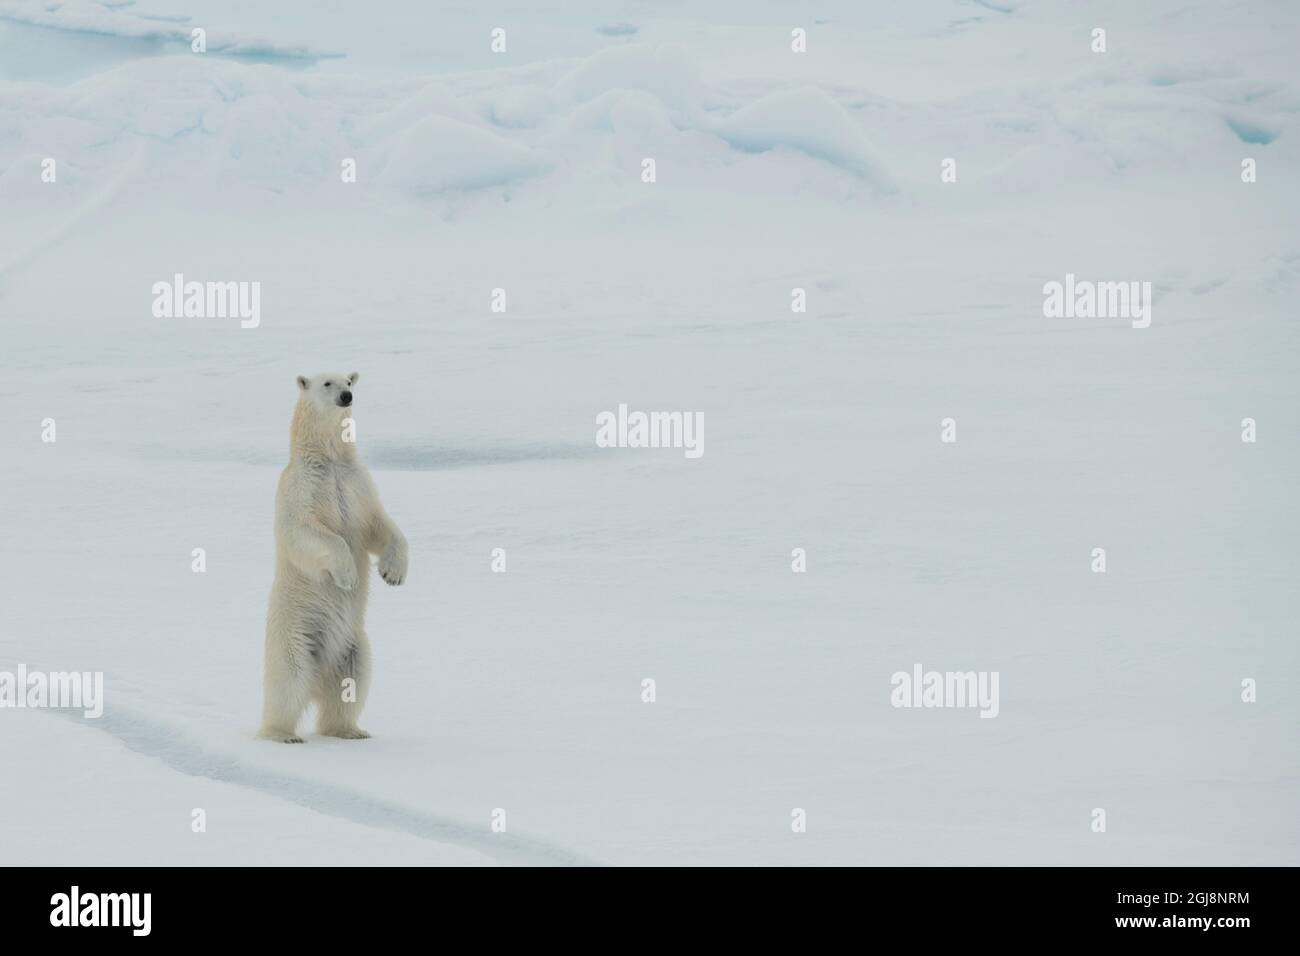 La Russia, alta artico. Orso polare a 84.53 gradi nord. Foto Stock